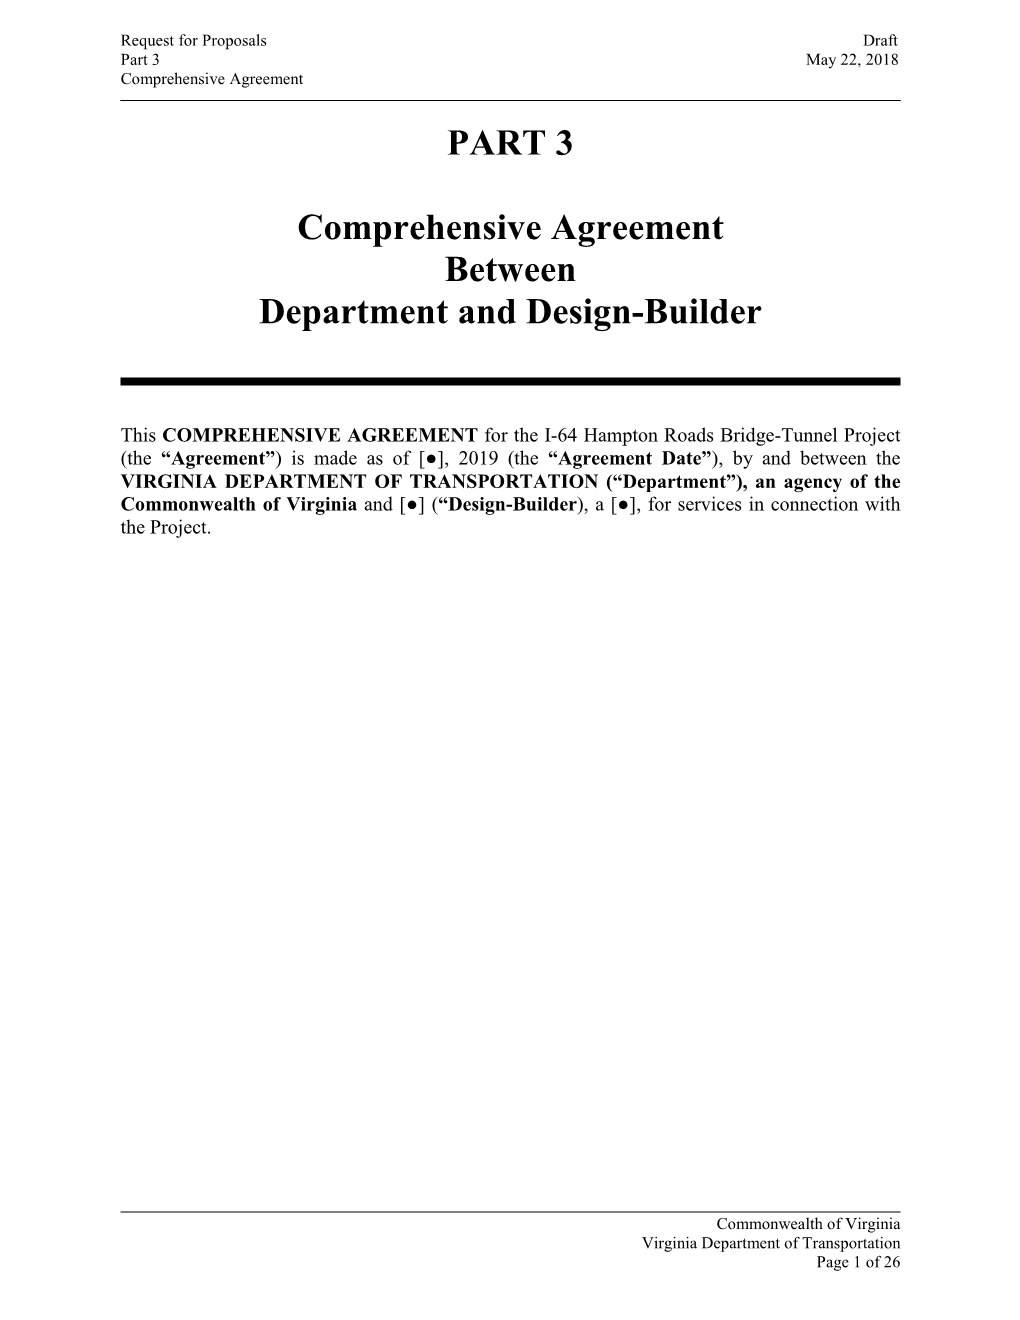 PART 3 Comprehensive Agreement Between Department and Design